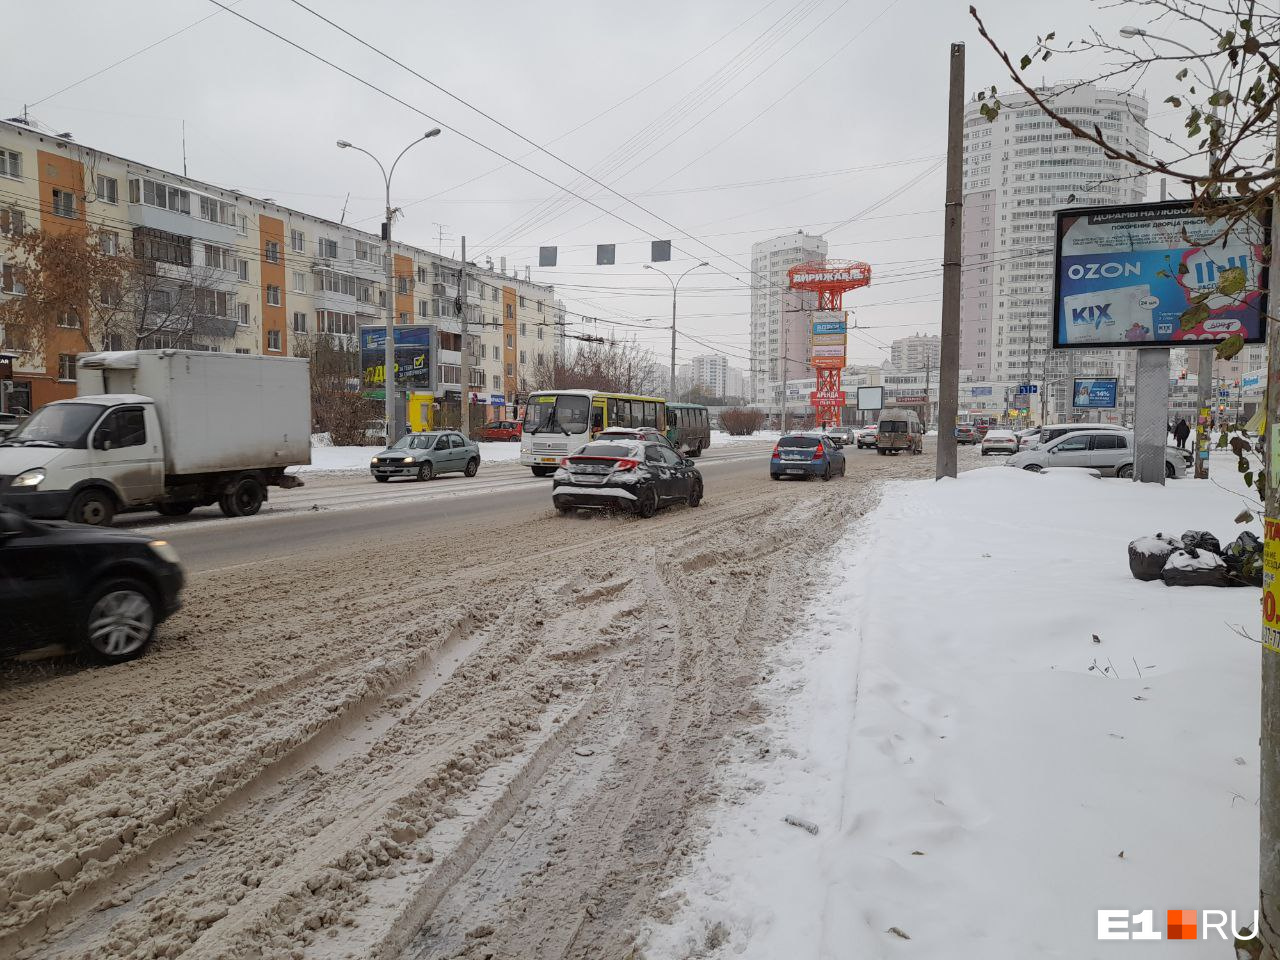 А куда делись пробки? Разбираемся, почему после снегопада движение на дорогах Екатеринбурга не встало